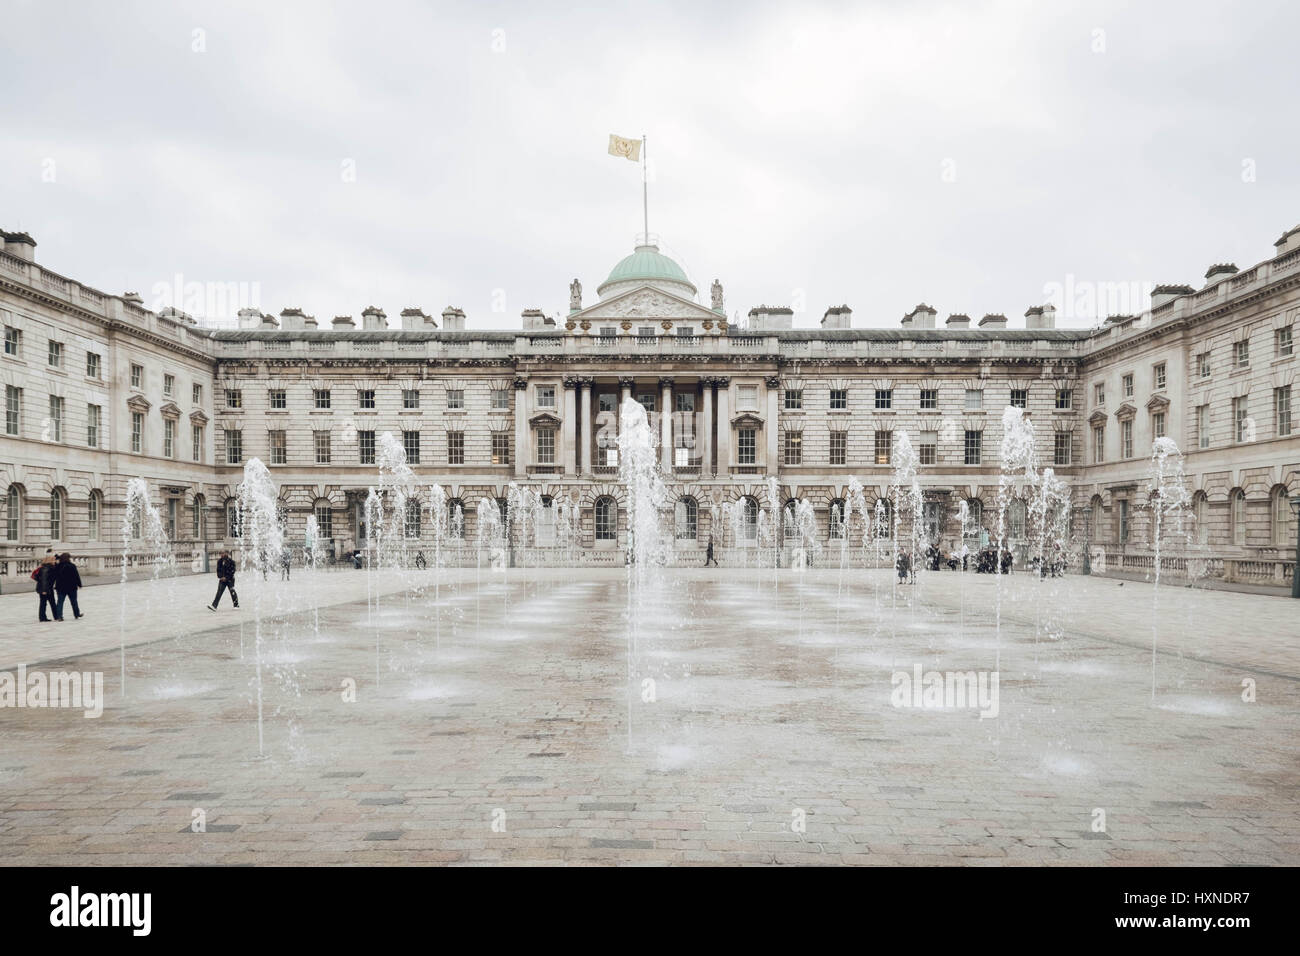 Photographie couleur de Somerset House, The Strand, London montrant le quad et les fontaines en fonctionnement. Banque D'Images